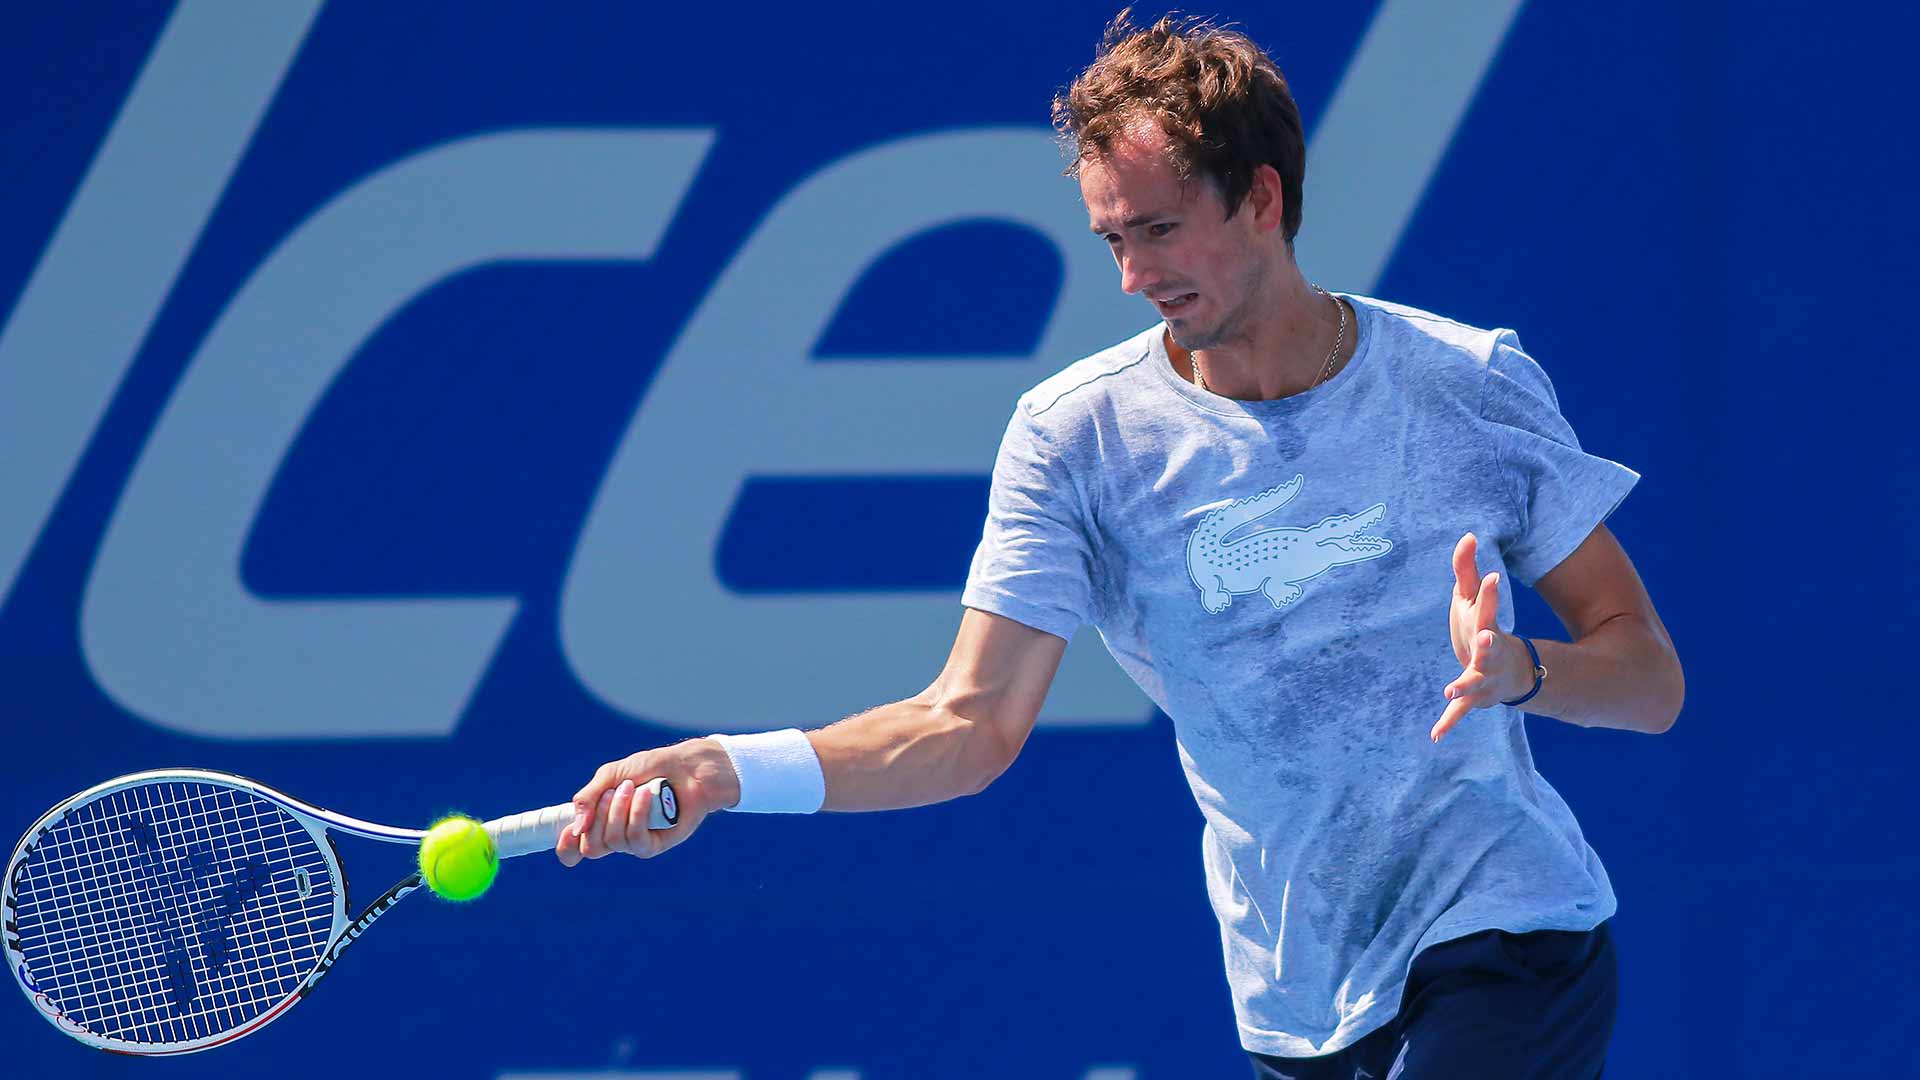 El camino de Daniil Medvedev al No. 1 en Acapulco puede pasar por Rafael Nadal |  Circuito ATP